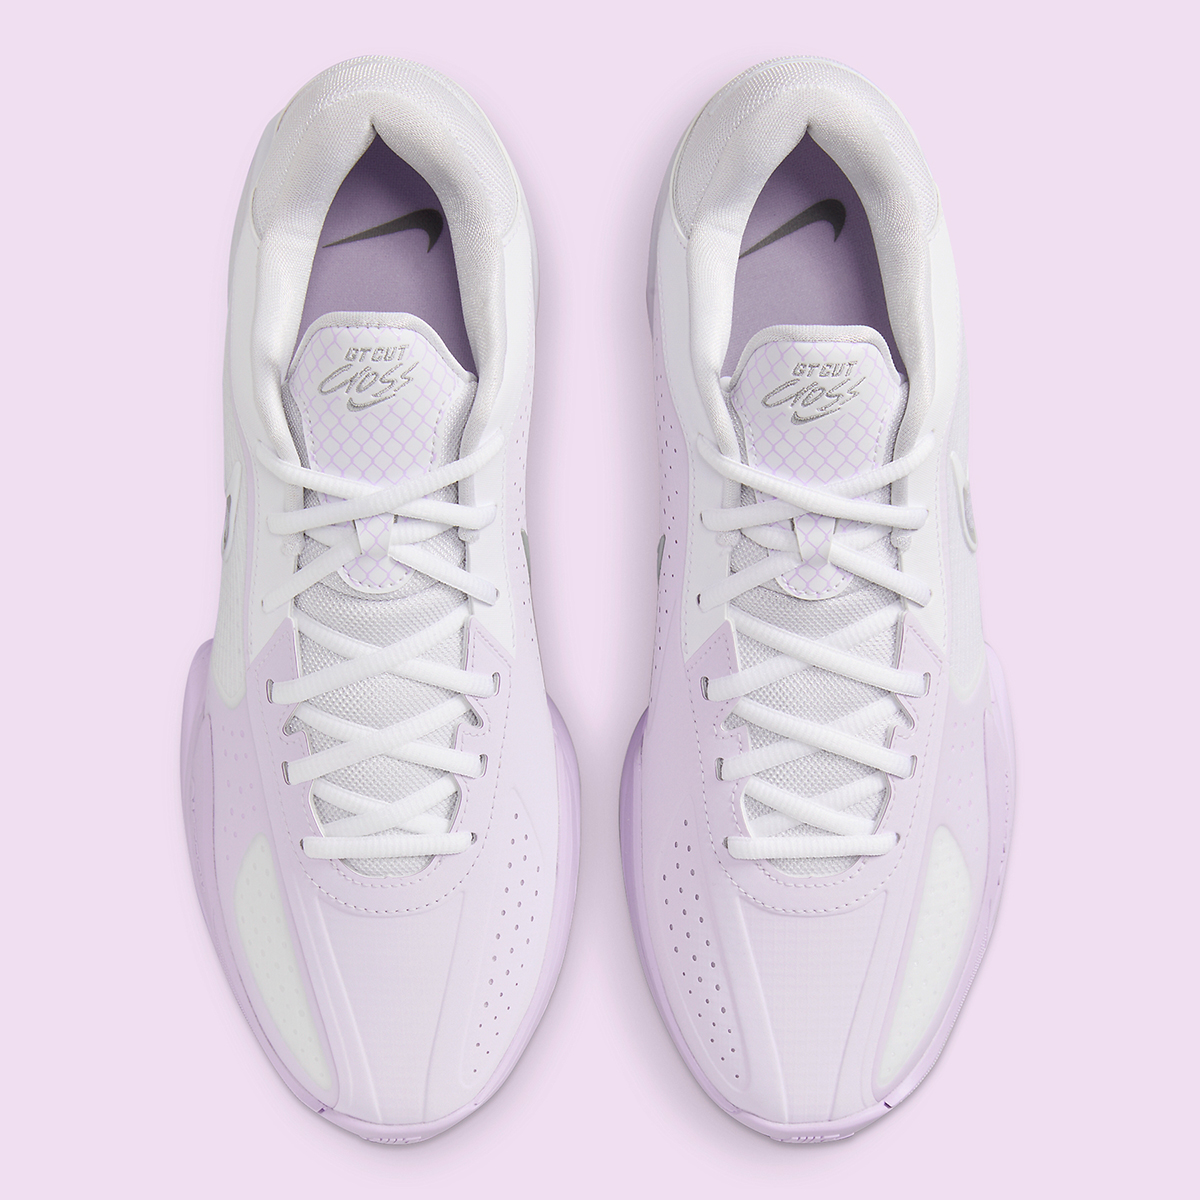 Nike Zoom Gt Cut Cross Barely Grape Pink Foam Hf0218 100 1